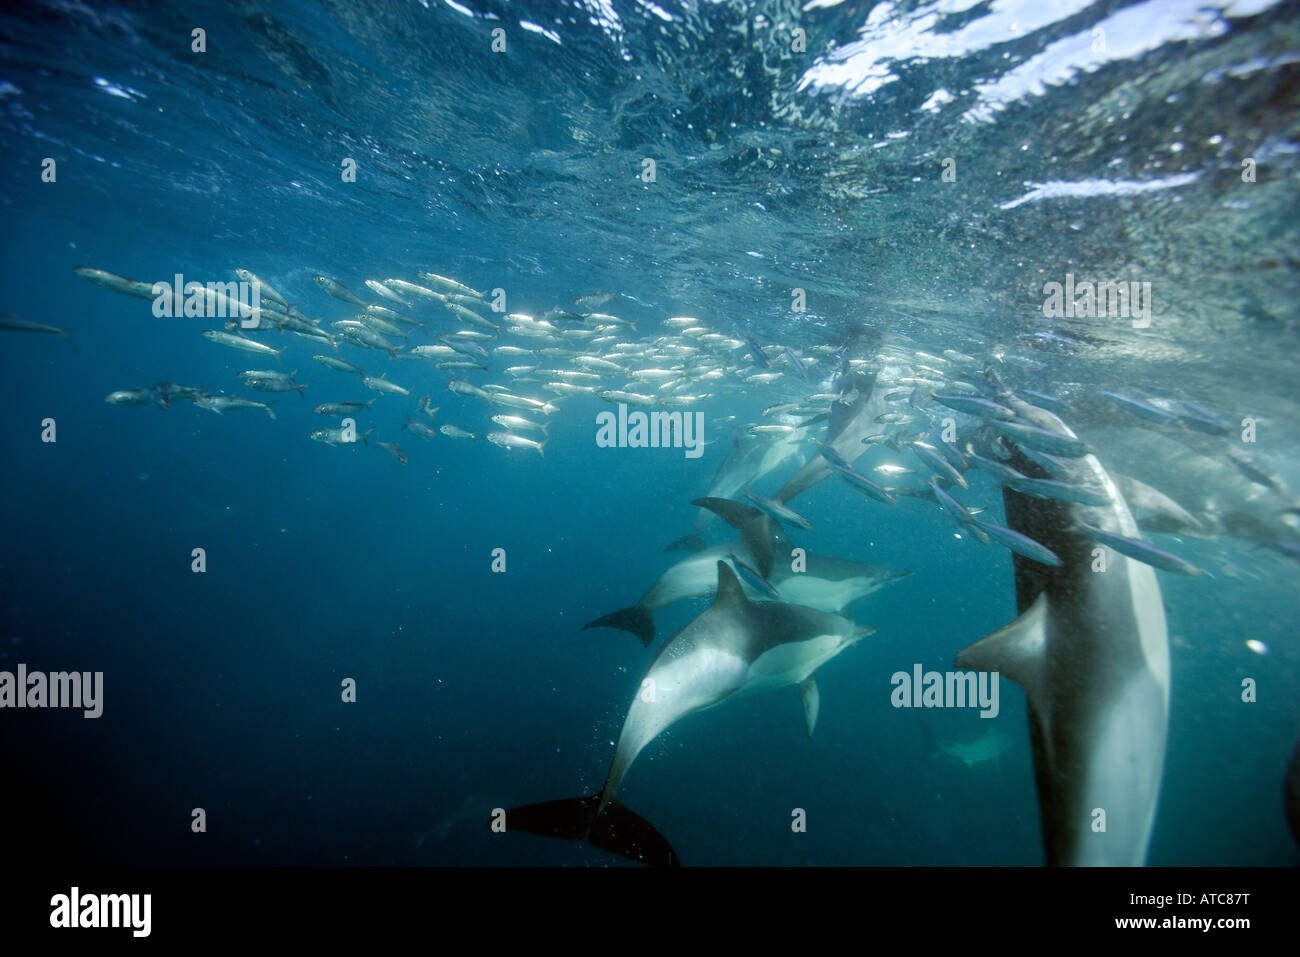 La chasse des dauphins dauphin commun longue sardines Delphinus capensis Transkei Afrique du Sud-est de la Côte sauvage de l'Océan Indien au Mozambique Banque D'Images